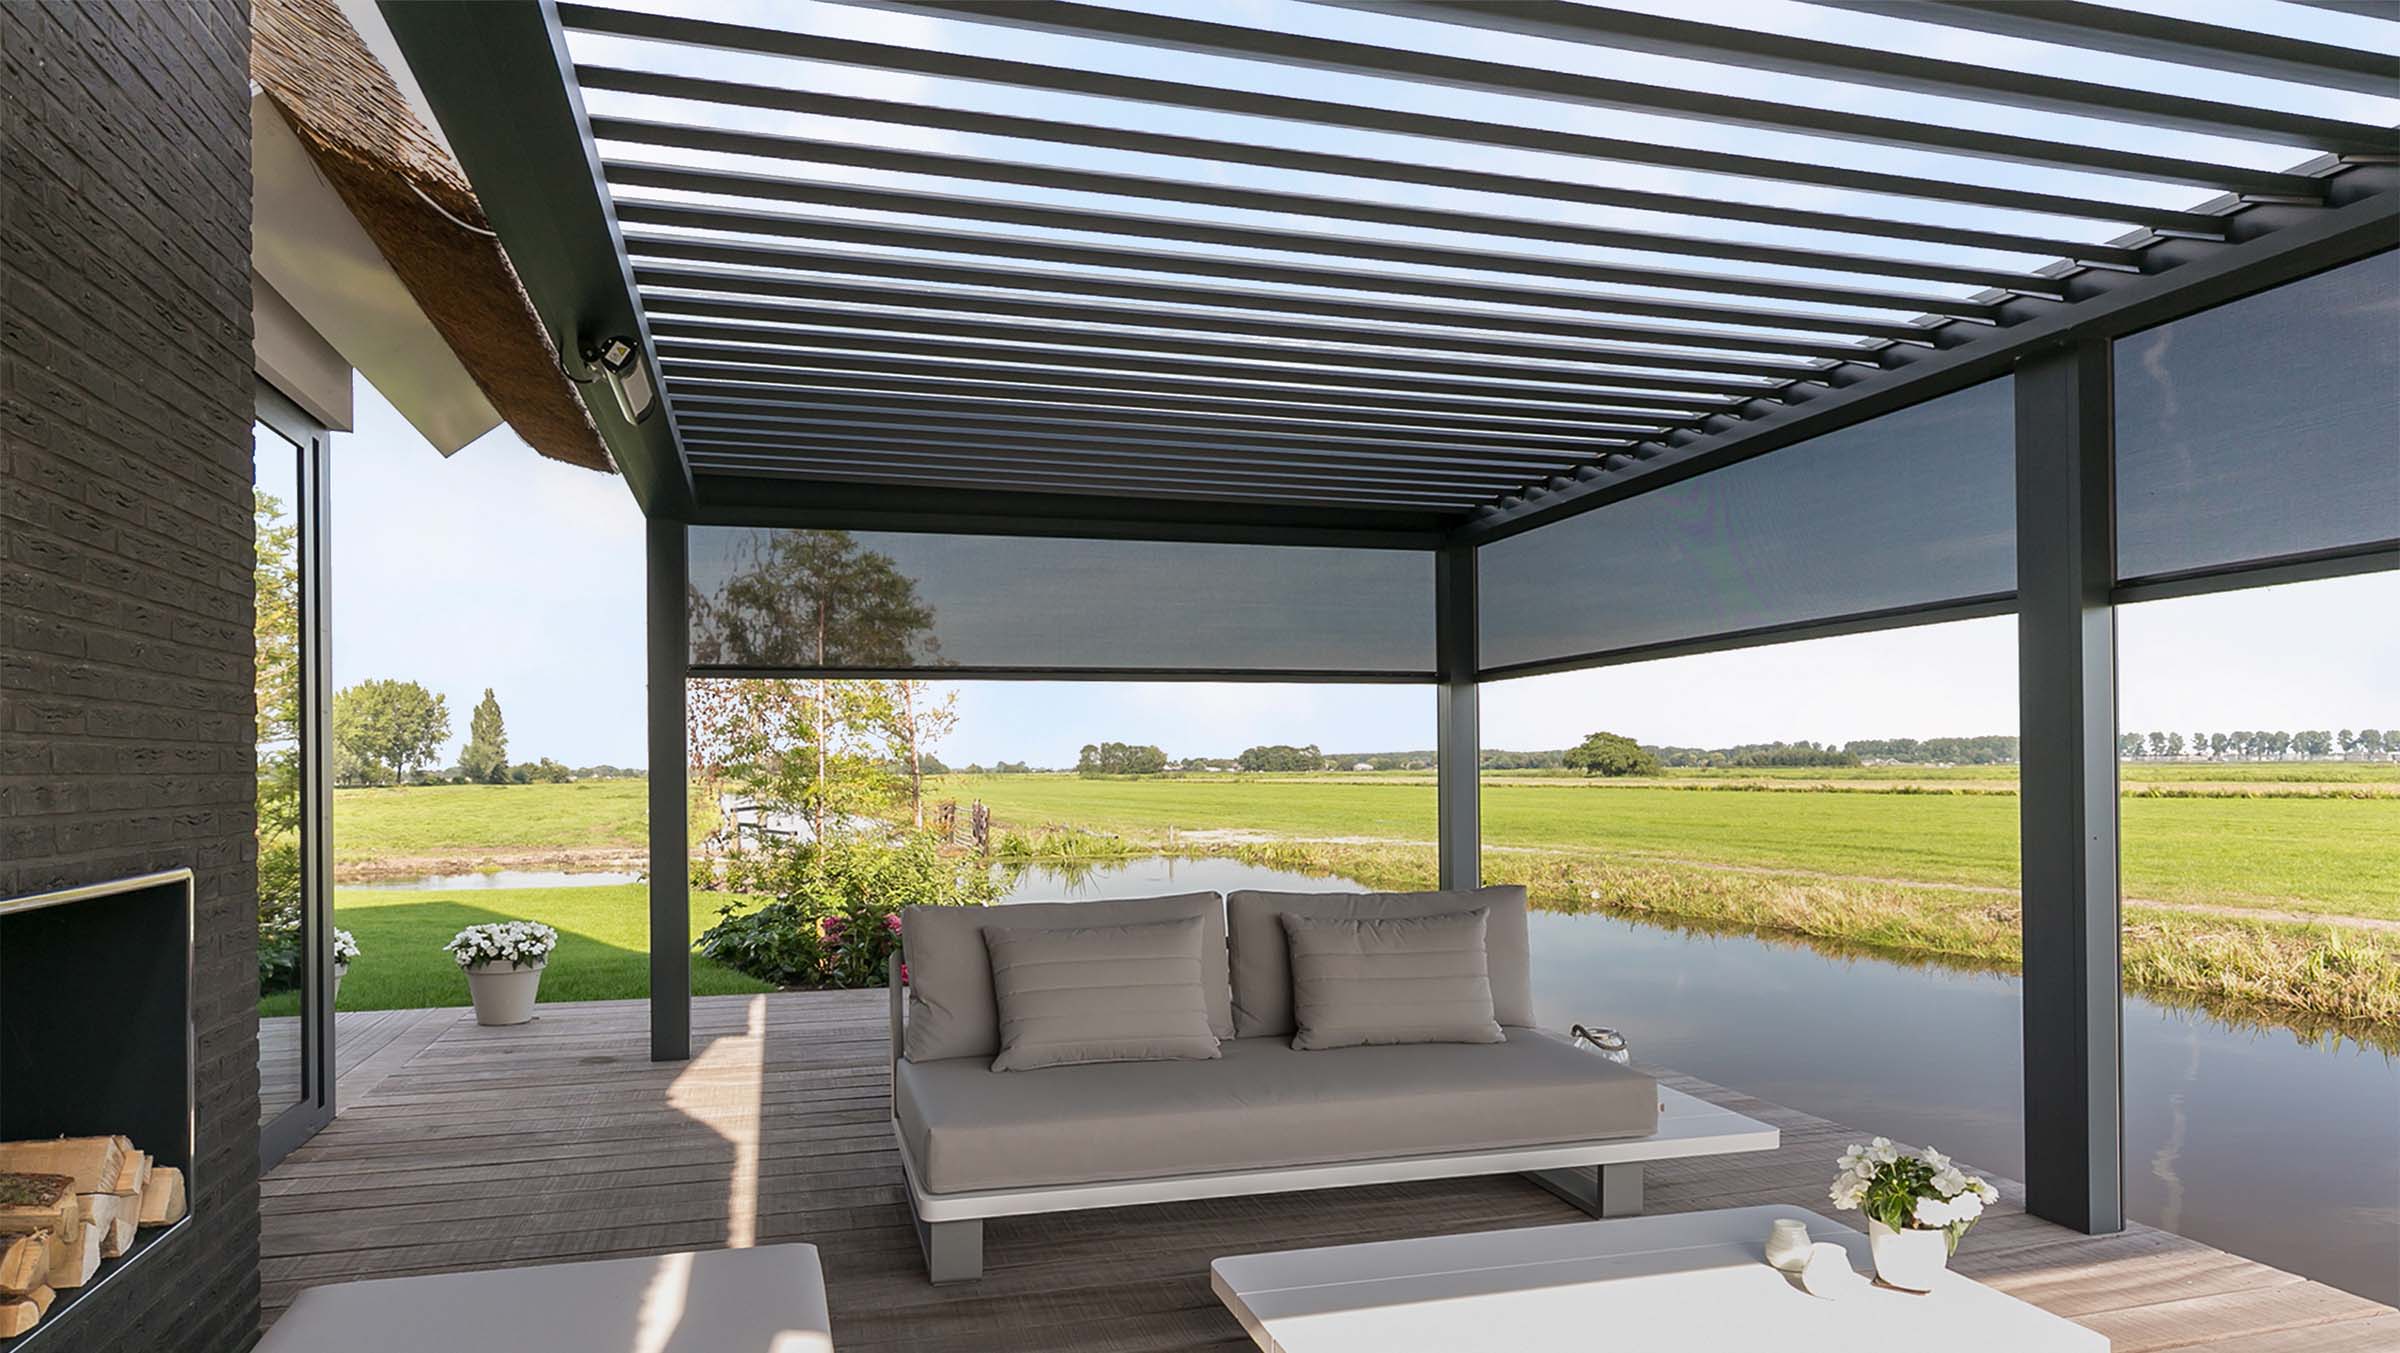 Lamellendach-Pergola mit seitlichen Textilscreens als Überdachung einer Terrasse am Wasser